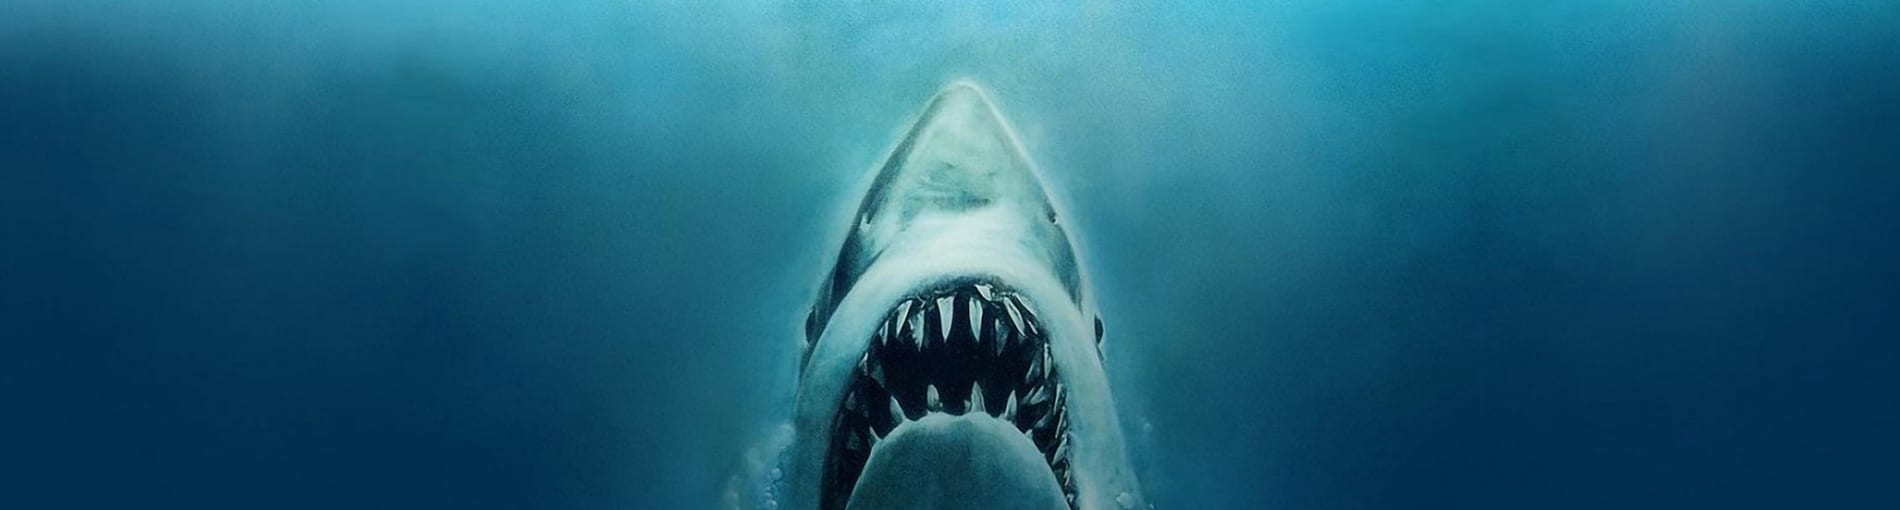 Crítica de cine: Tiburón